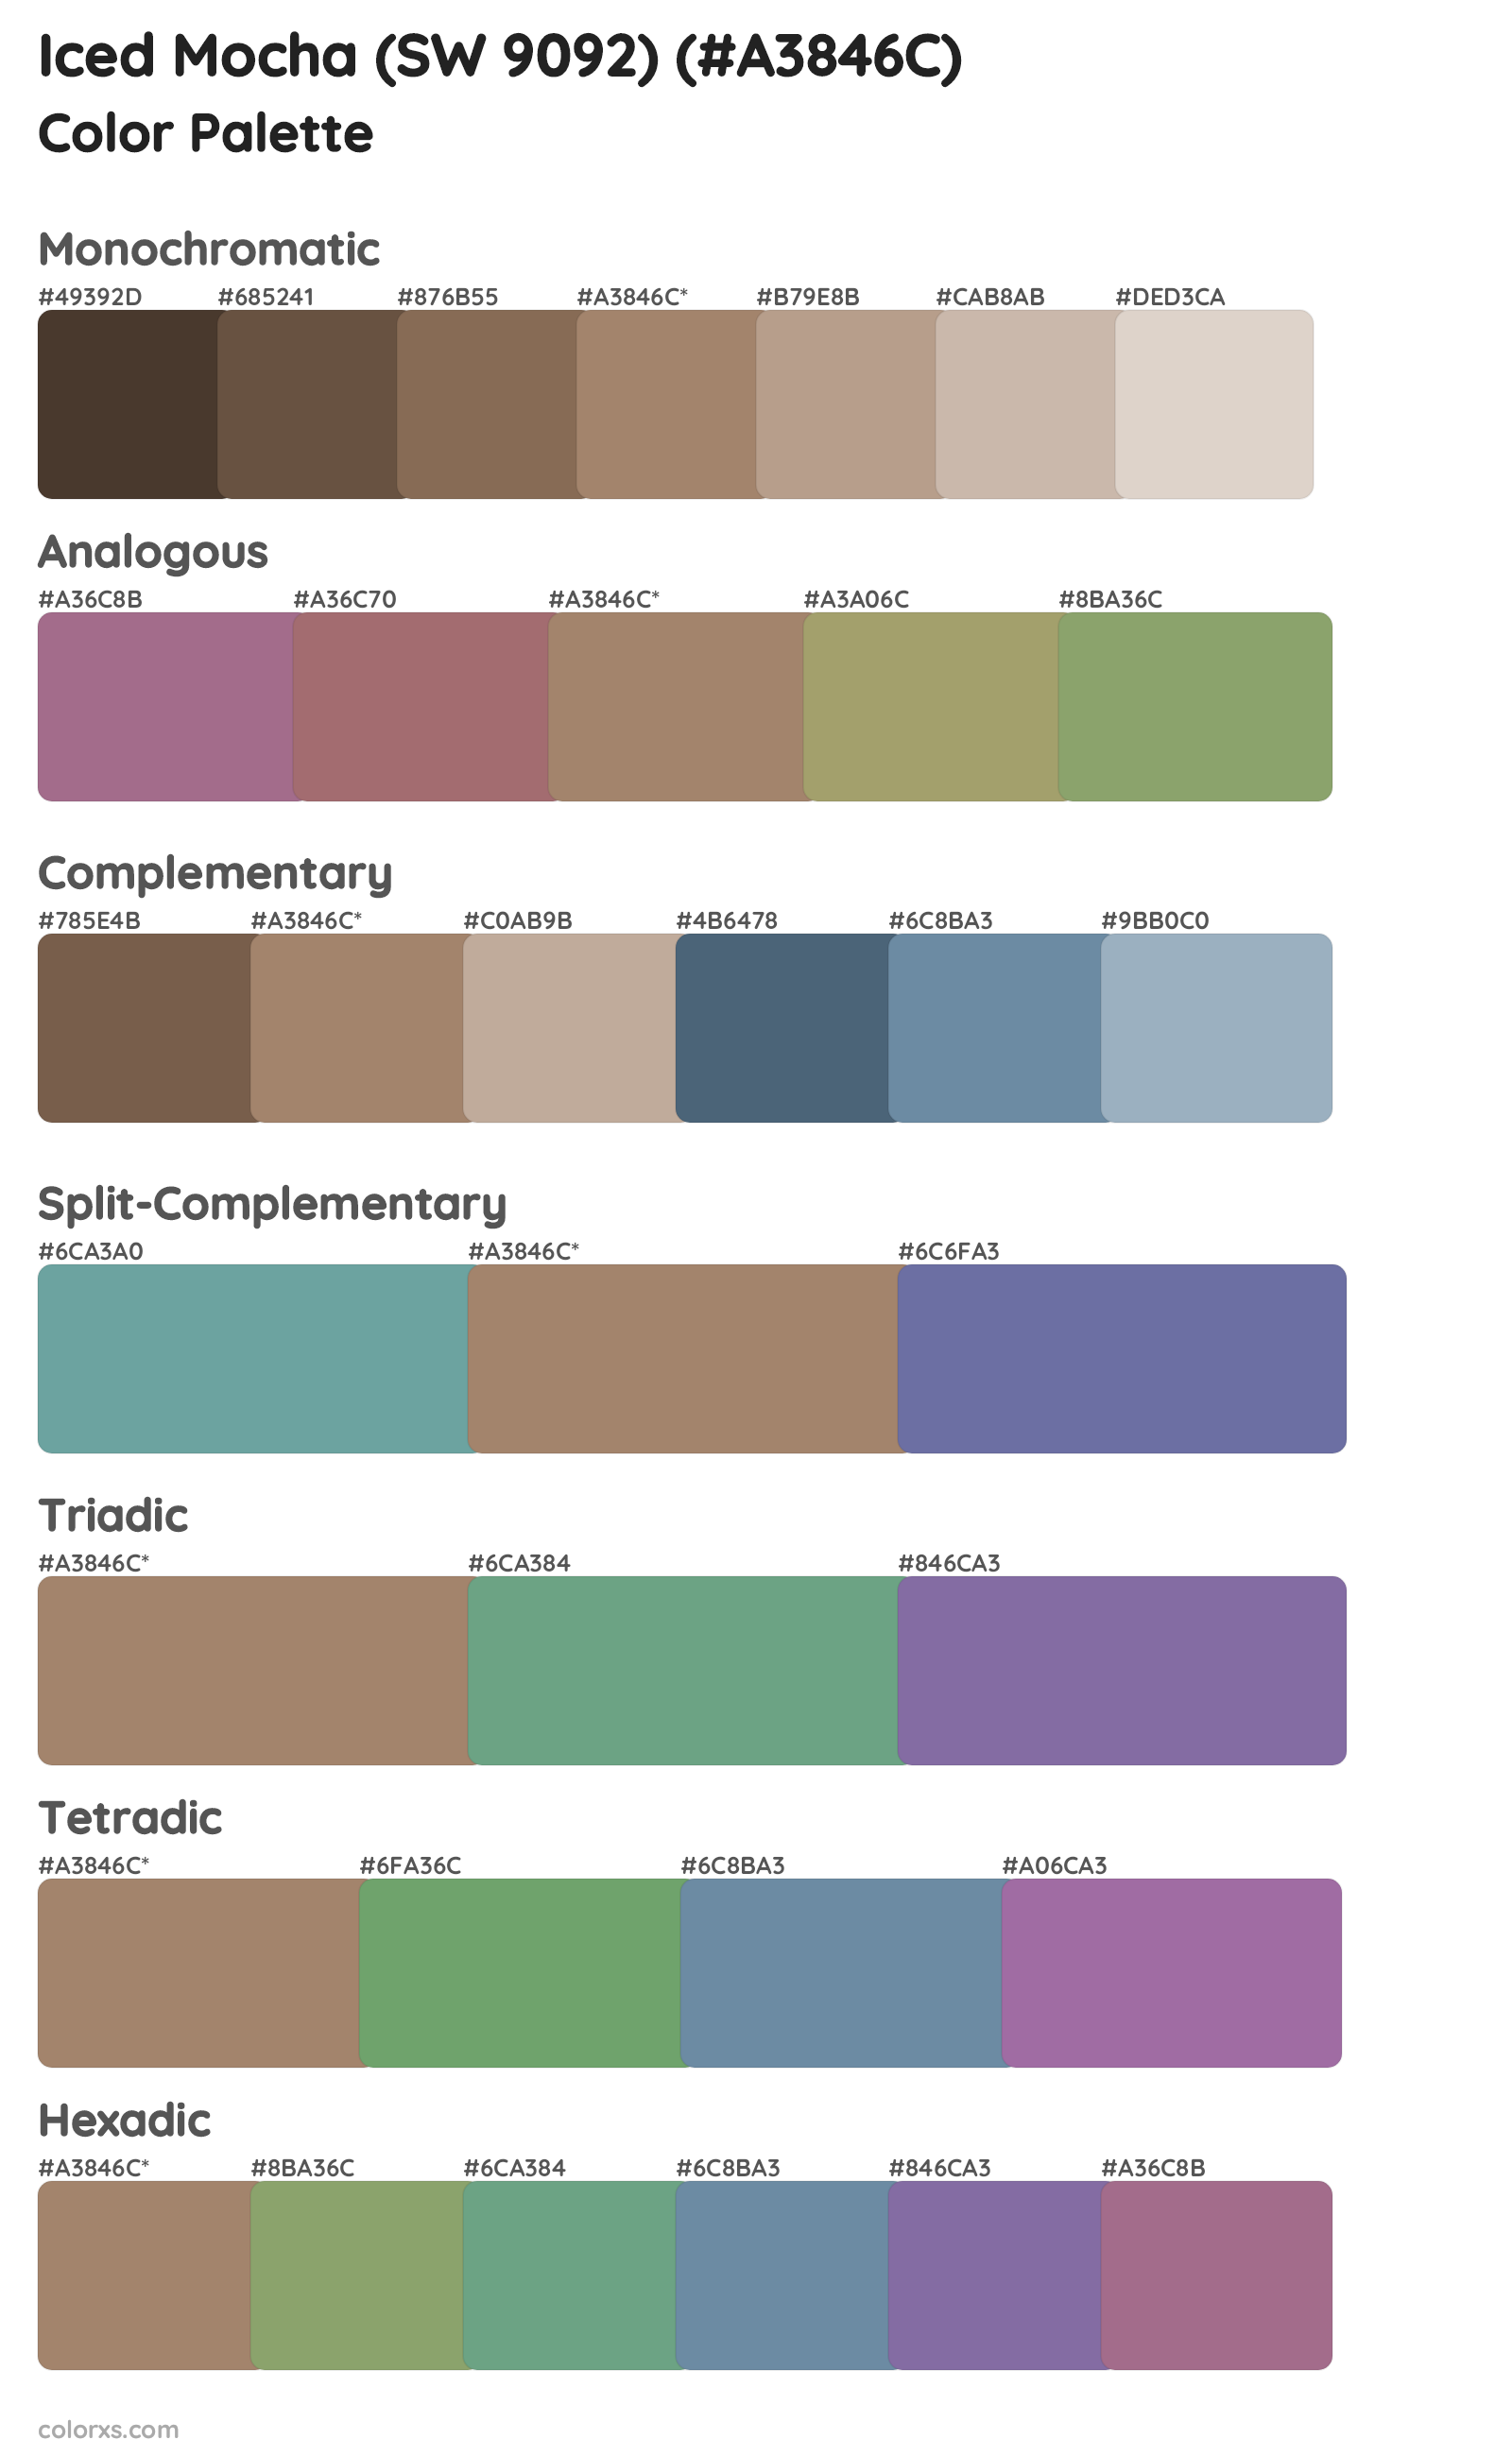 Iced Mocha (SW 9092) Color Scheme Palettes